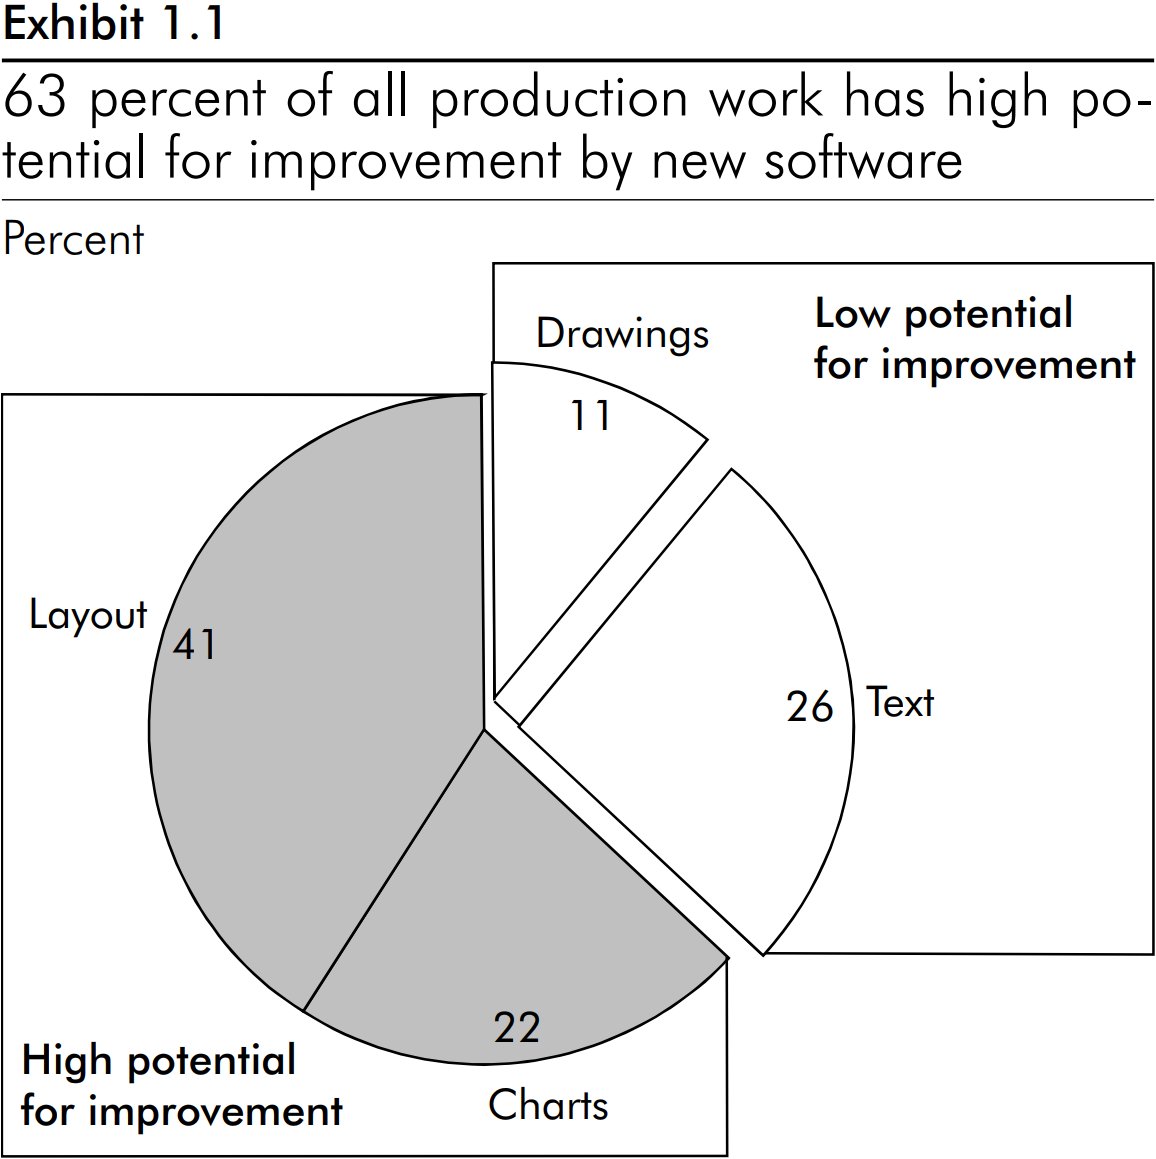 مخطط دائري يوضح أن 63% من أعمال إنتاج الشرائح تتسم بإمكانية تحسين كبيرة باستخدام البرنامج.